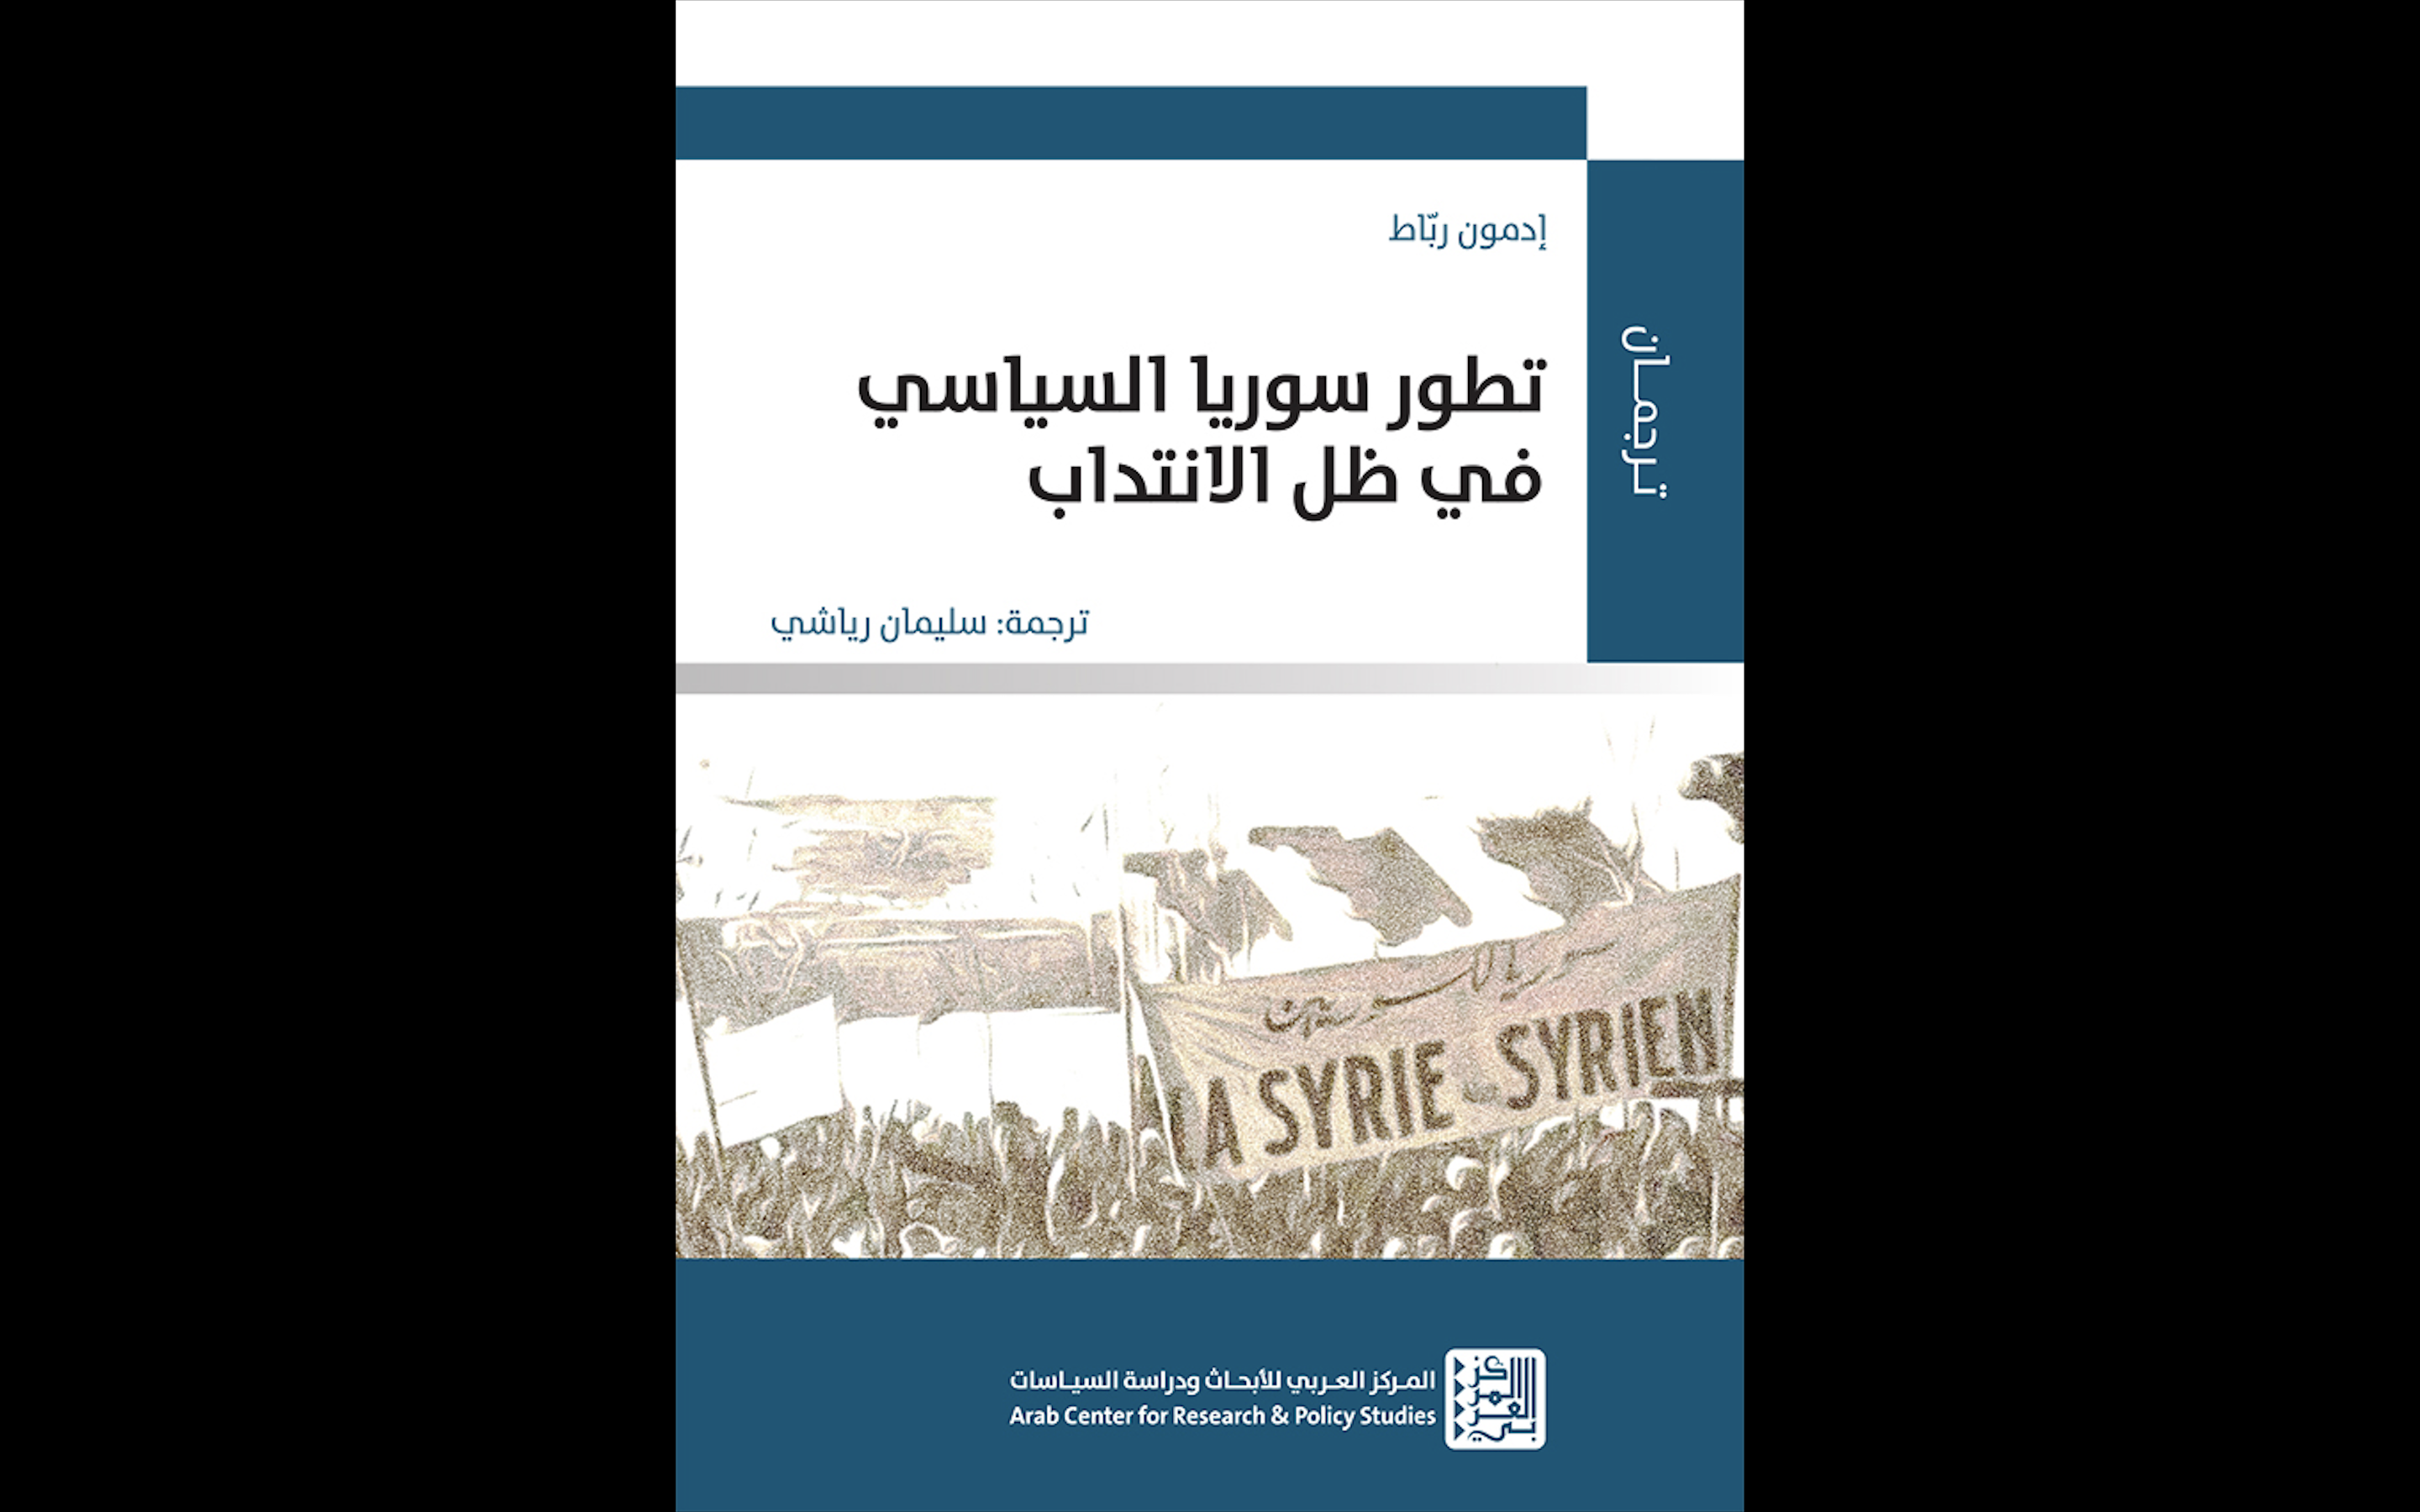 جديد: «تطور سوريا السياسي في ظل الانتداب» عن المركز العربي